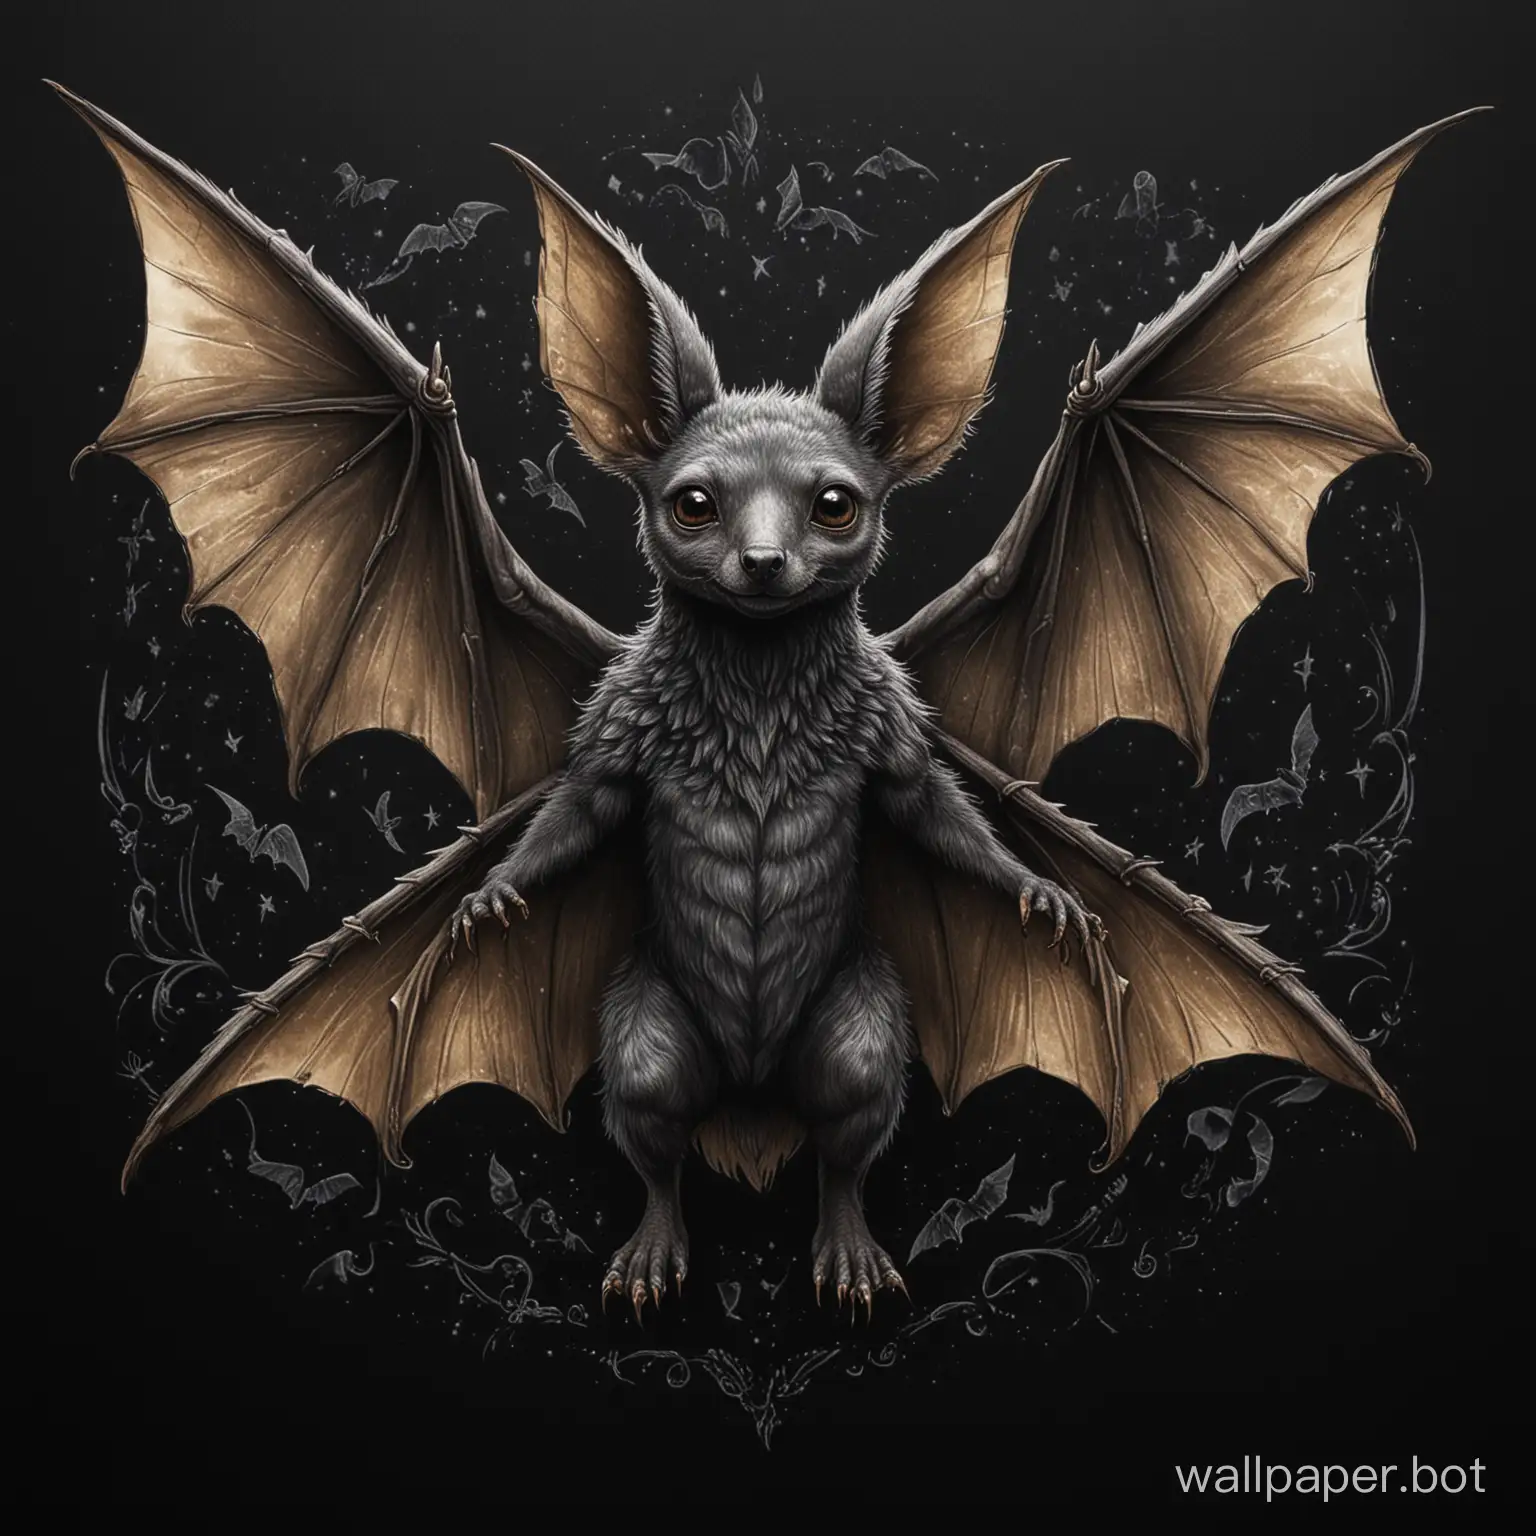 Kolovyortysh-Mythical-Creature-Winged-Kangaroo-with-Human-Face-on-Black-Background